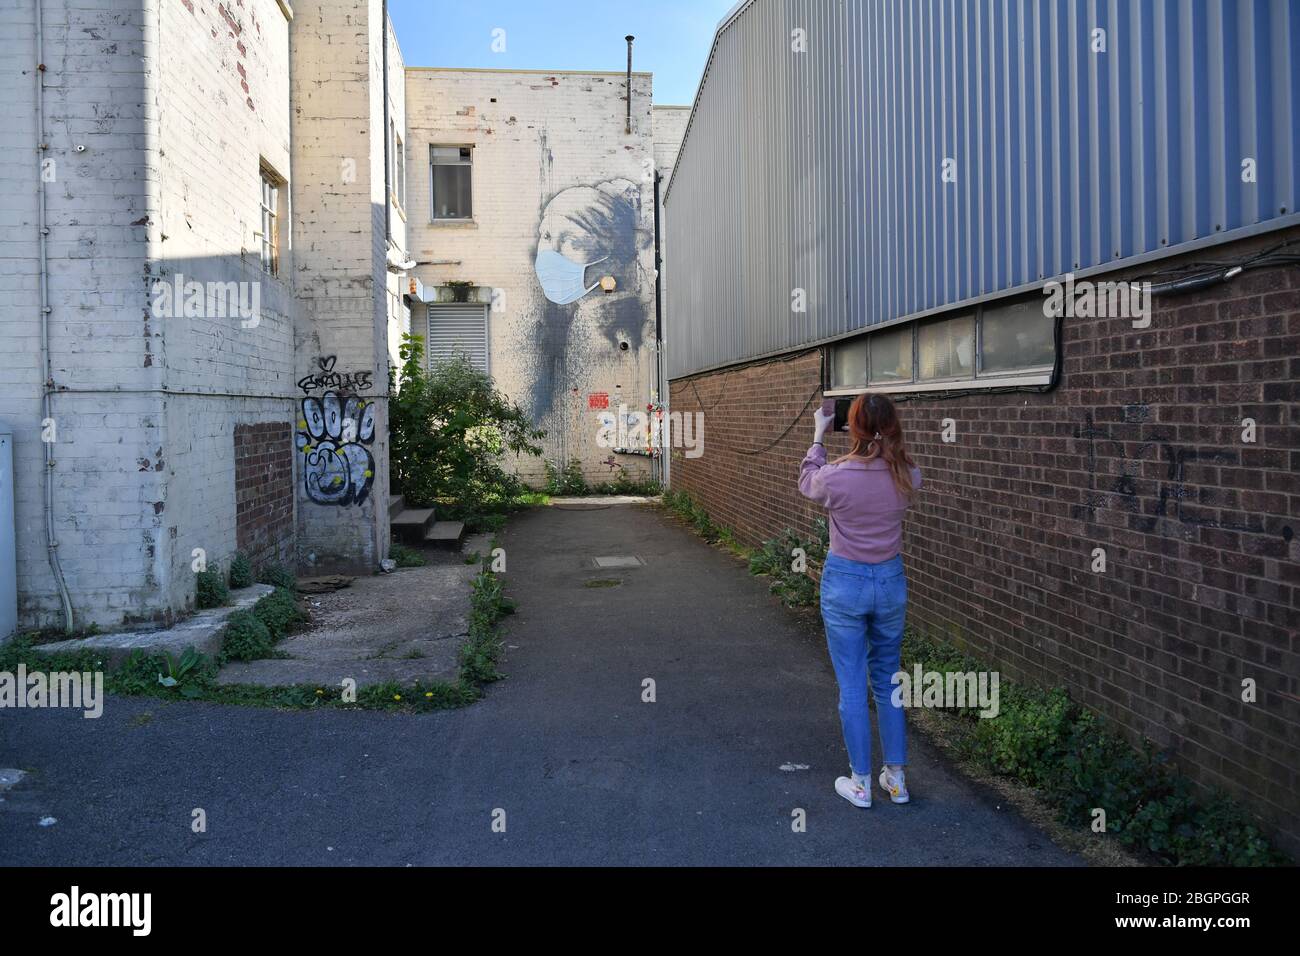 Une femme photographie la femme de Banksy's Girl avec une murale de tympan percé, qui a reçu un masque facial en signe de pandémie de coronavirus, à Hanovre place à Bristol, alors que le Royaume-Uni continue de se maintenir en position pour aider à freiner la propagation du coronavirus. Banque D'Images